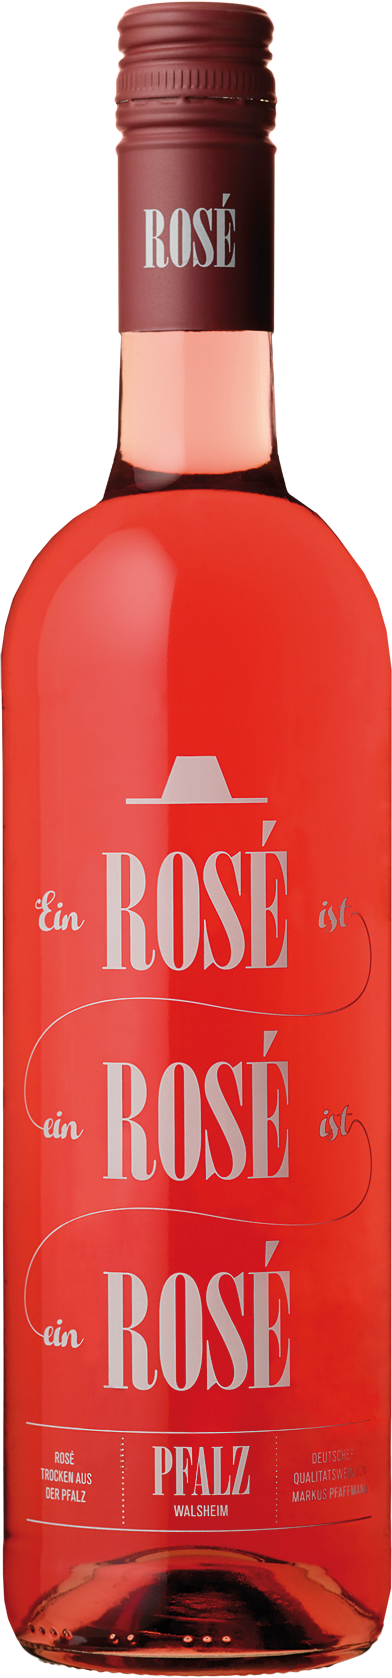 Rosé Rosé Rosé